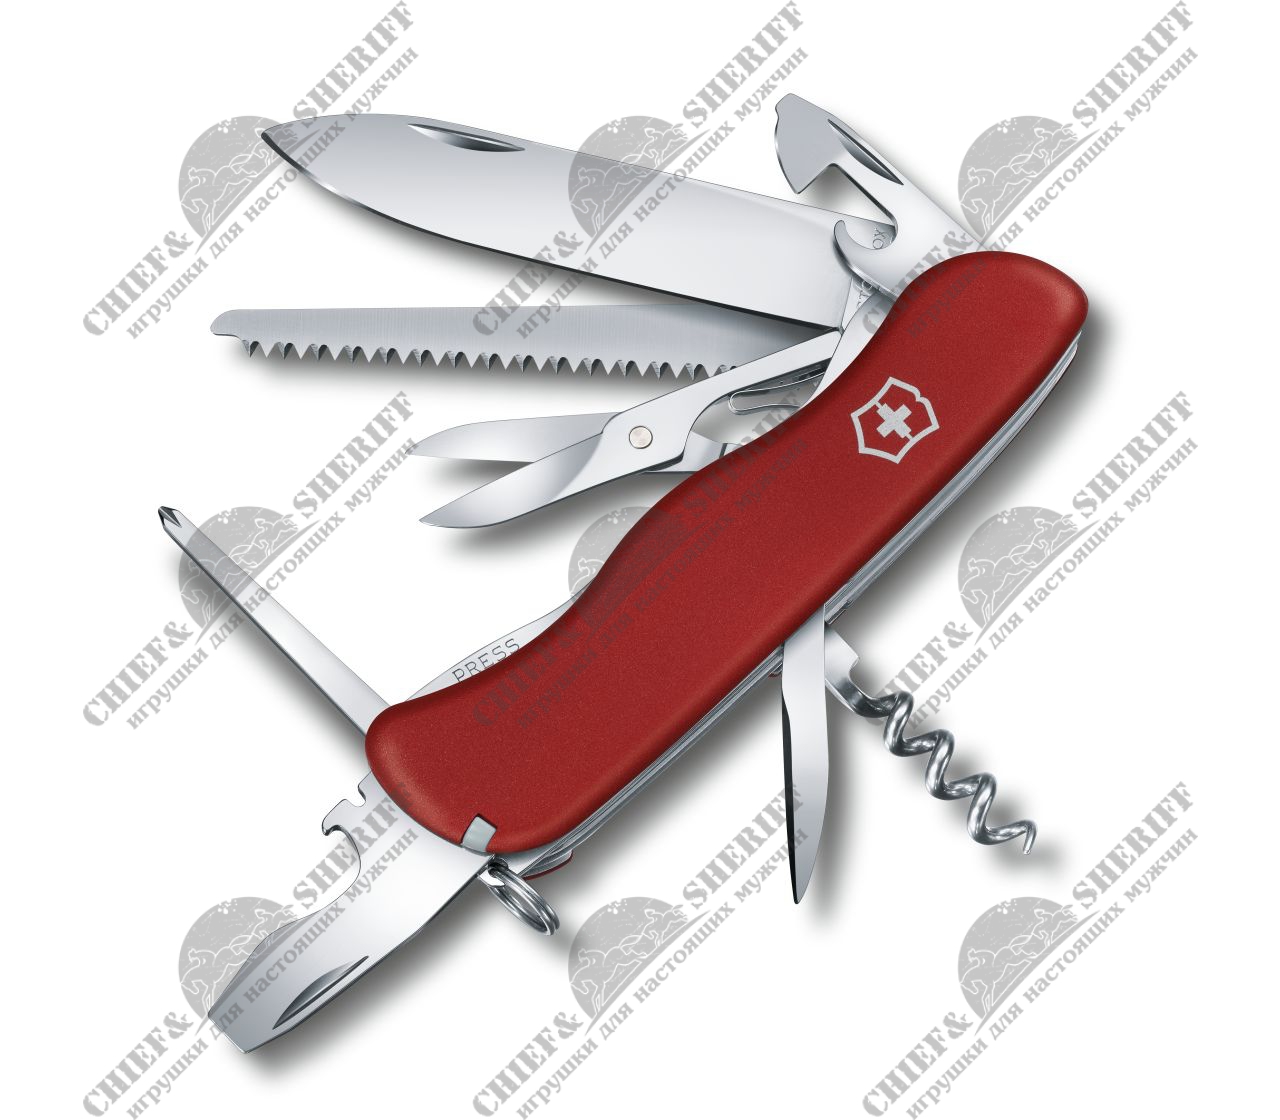 Нож перочинный Victorinox Outrider, 111 мм, 14 функций, красный, 0.8513